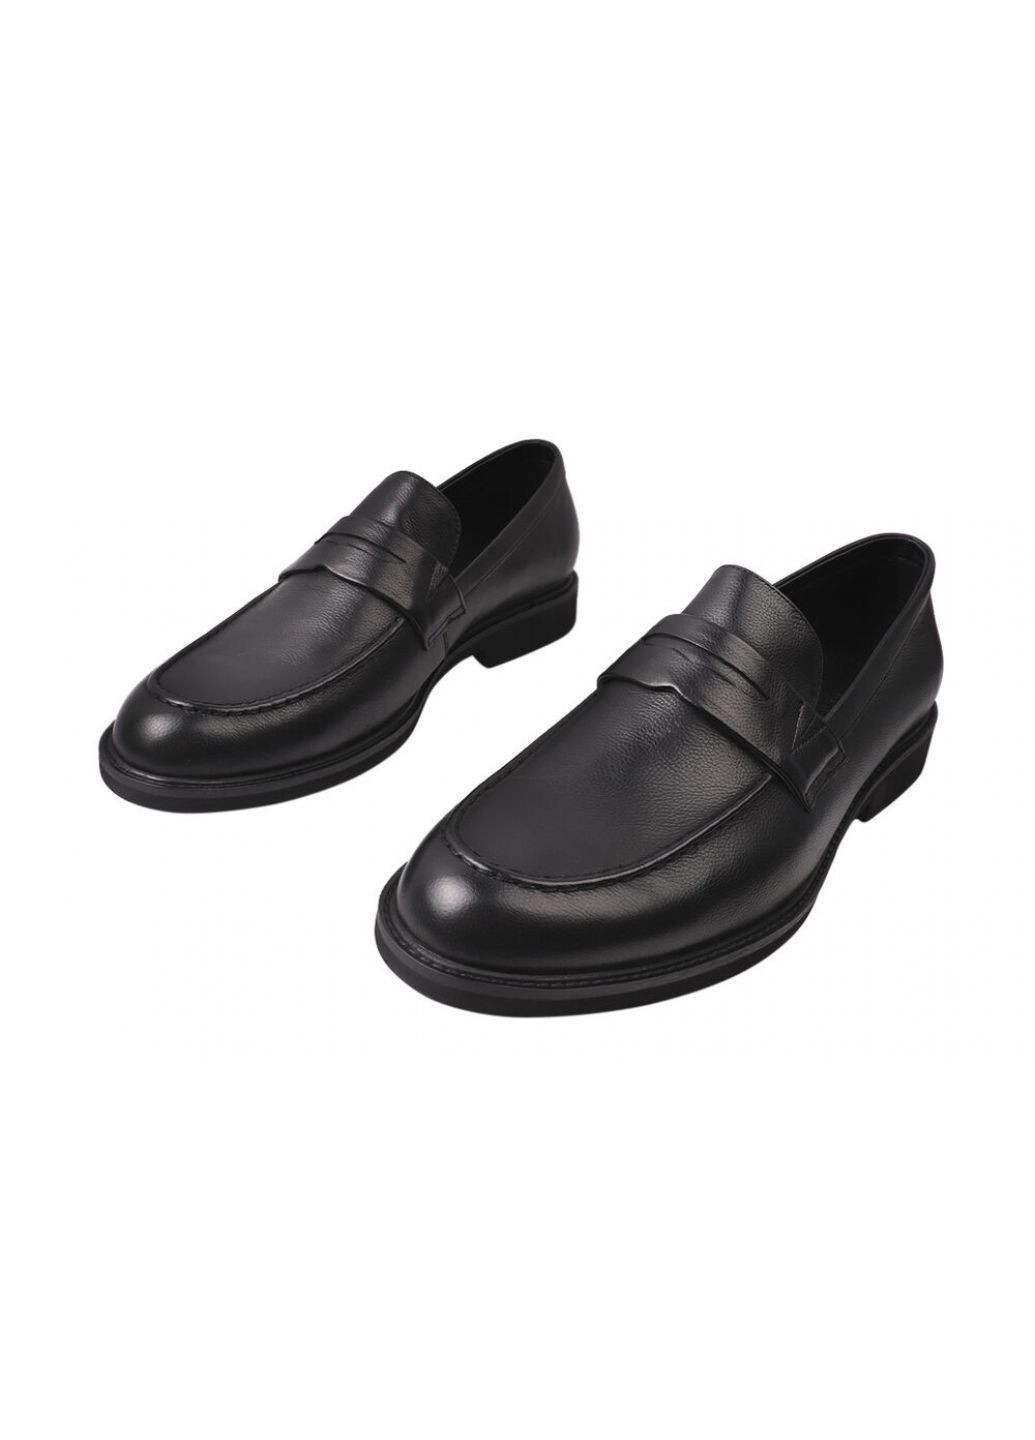 Черные туфли лоферы мужские из натуральной кожи, на низком ходу, цвет черный, Basconi